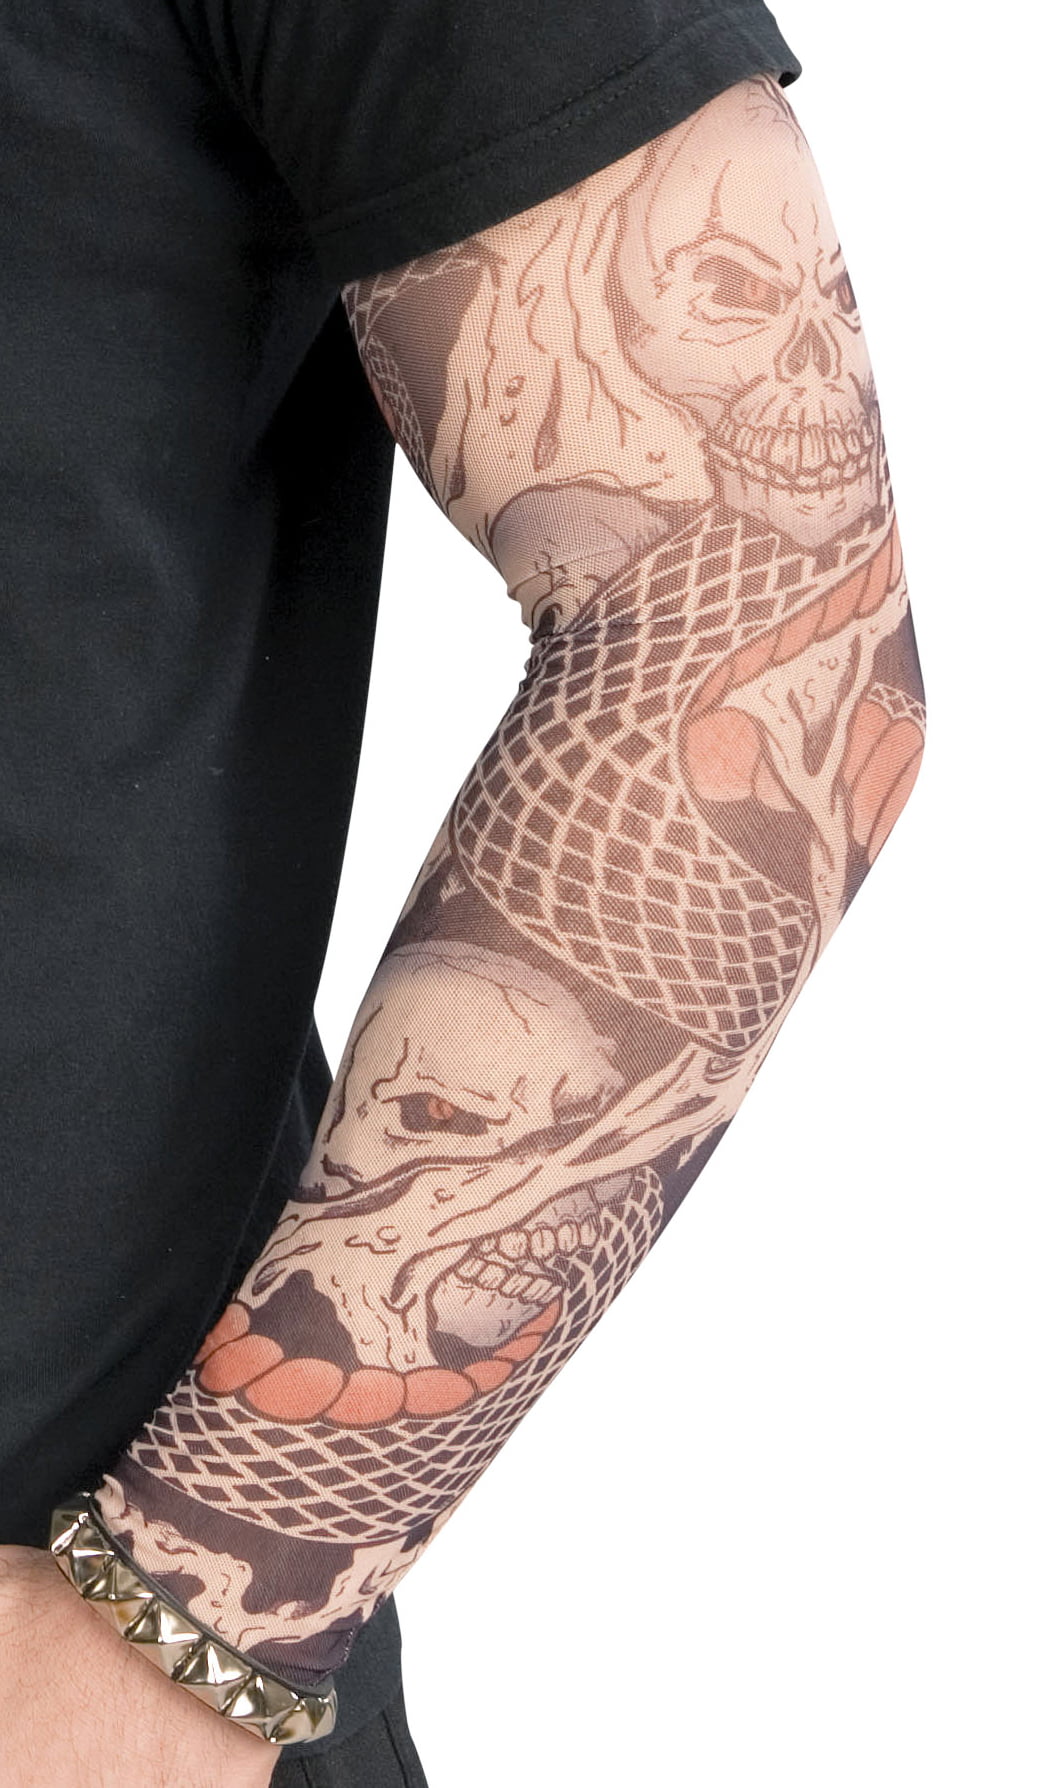 Yazhiji 46 Sheets Lion Wolf Full Arm Temporary Tattoo for India | Ubuy